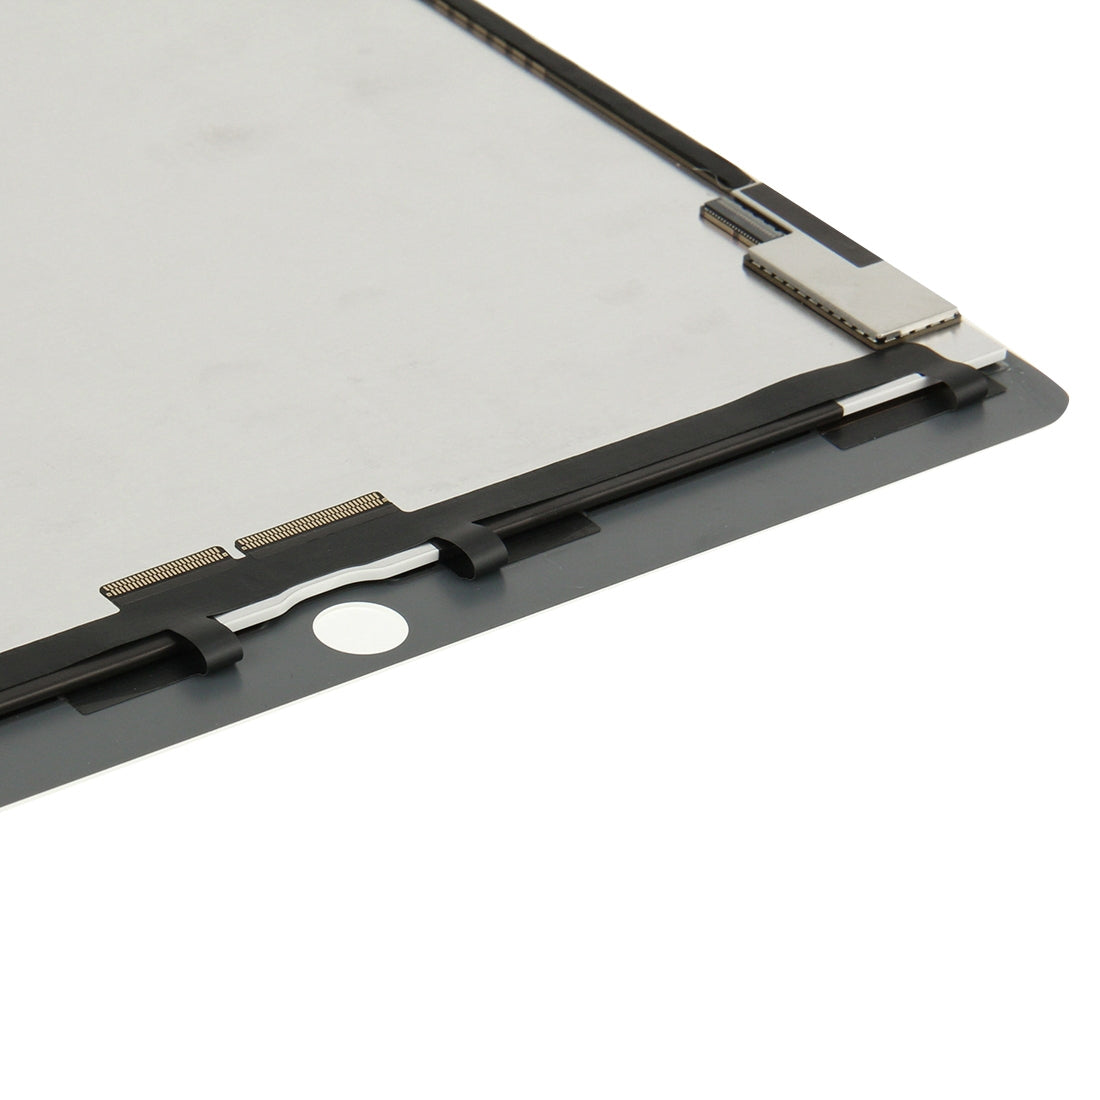 Pantalla LCD + Tactil Digitalizador Apple iPad Pro 12.9 A1584 A1652 Blanco